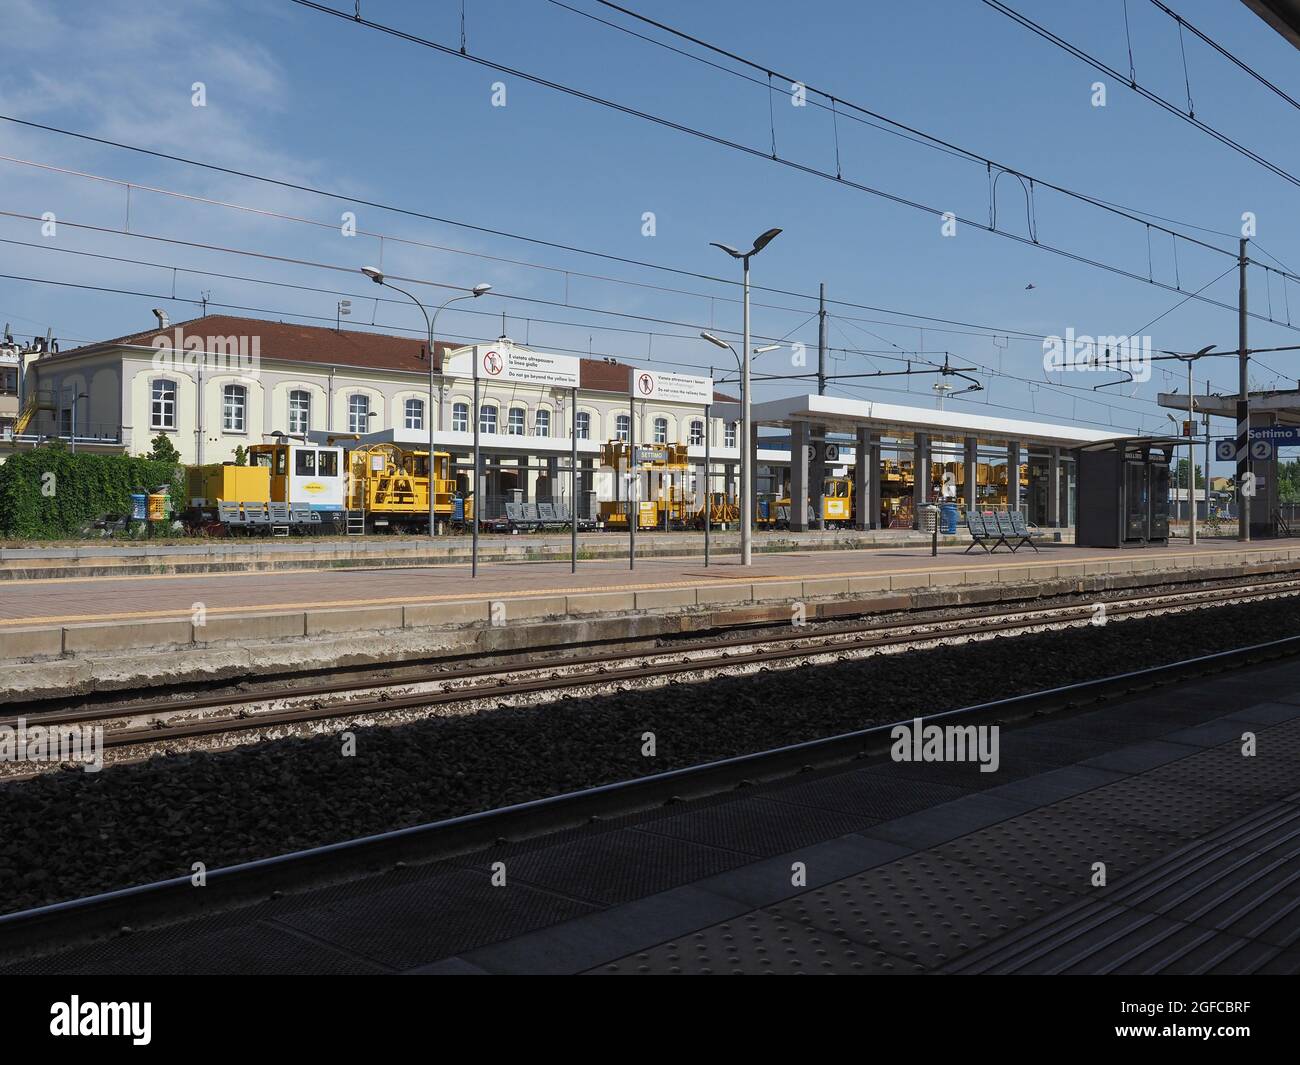 SETTIMO TORINESE, ITALIA - CIRCA AGOSTO 2021: Stazione ferroviaria di Settimo Torinese Foto Stock